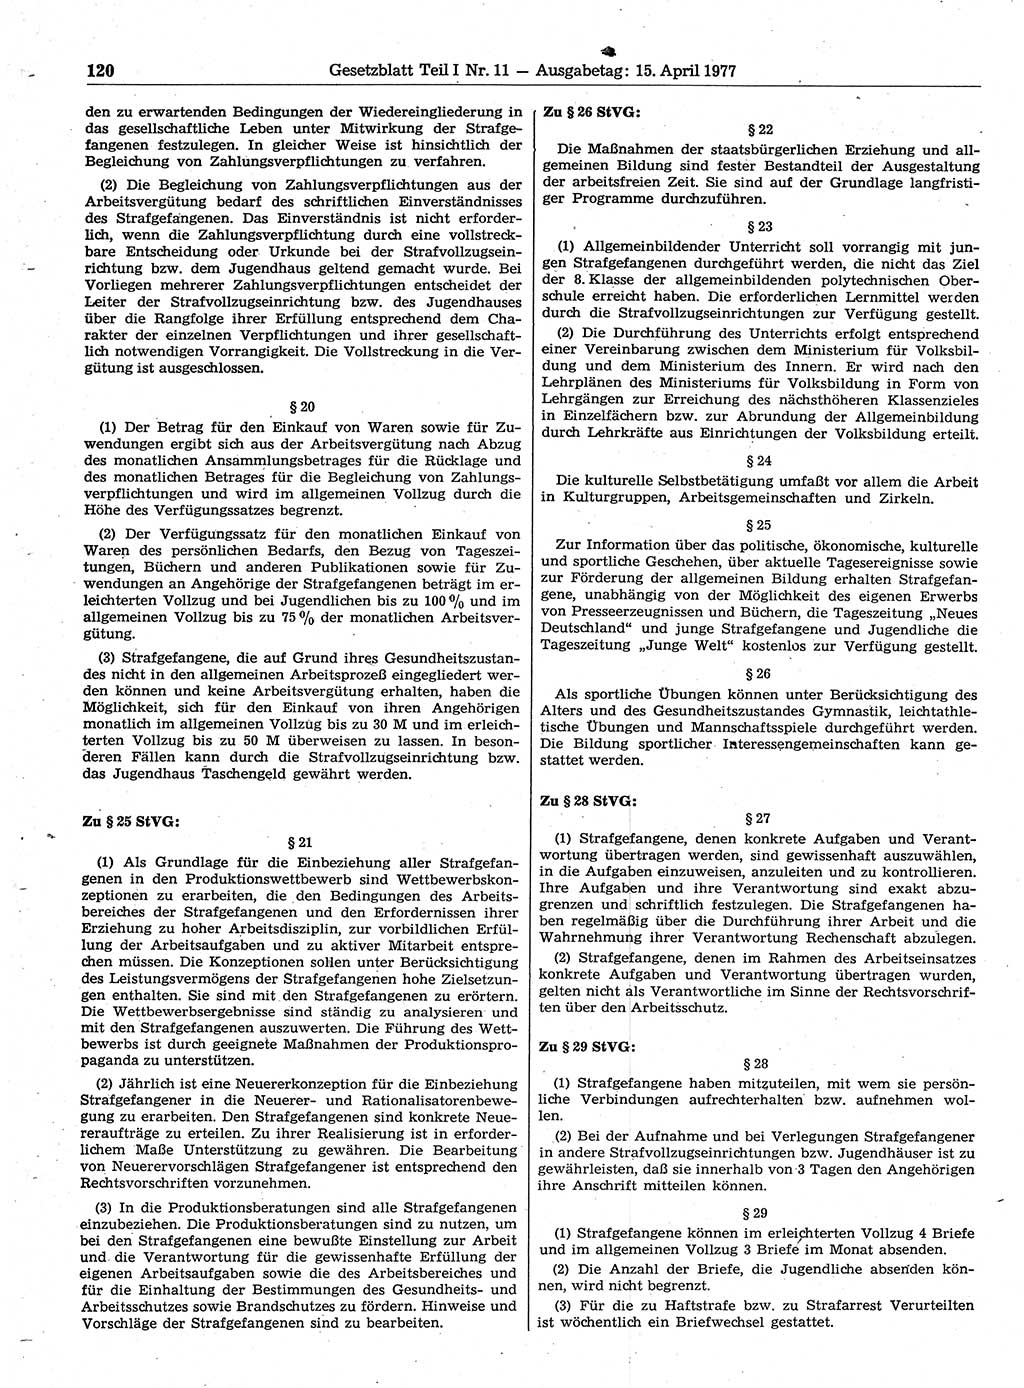 Gesetzblatt (GBl.) der Deutschen Demokratischen Republik (DDR) Teil Ⅰ 1977, Seite 120 (GBl. DDR Ⅰ 1977, S. 120)